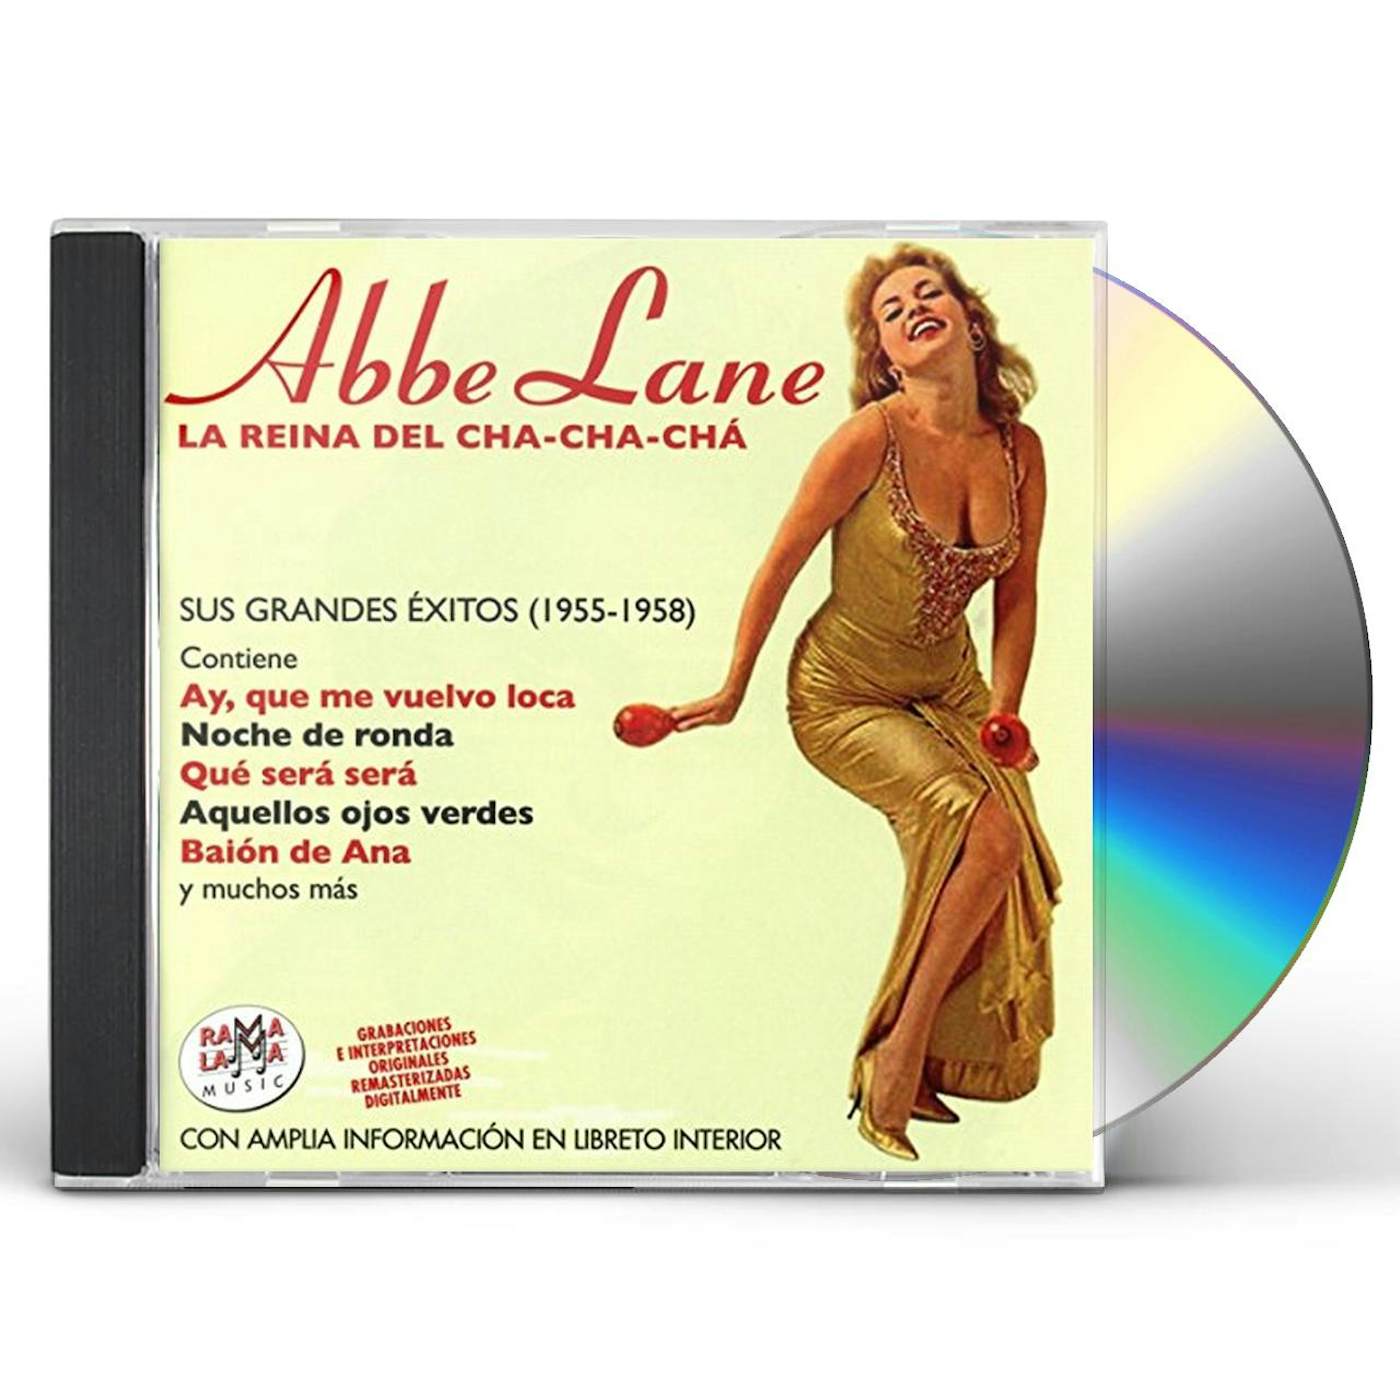 Abbe Lane LA REINA DEL CHA-CHA-CHA SUS GRANDES EXITOS 55-58 CD